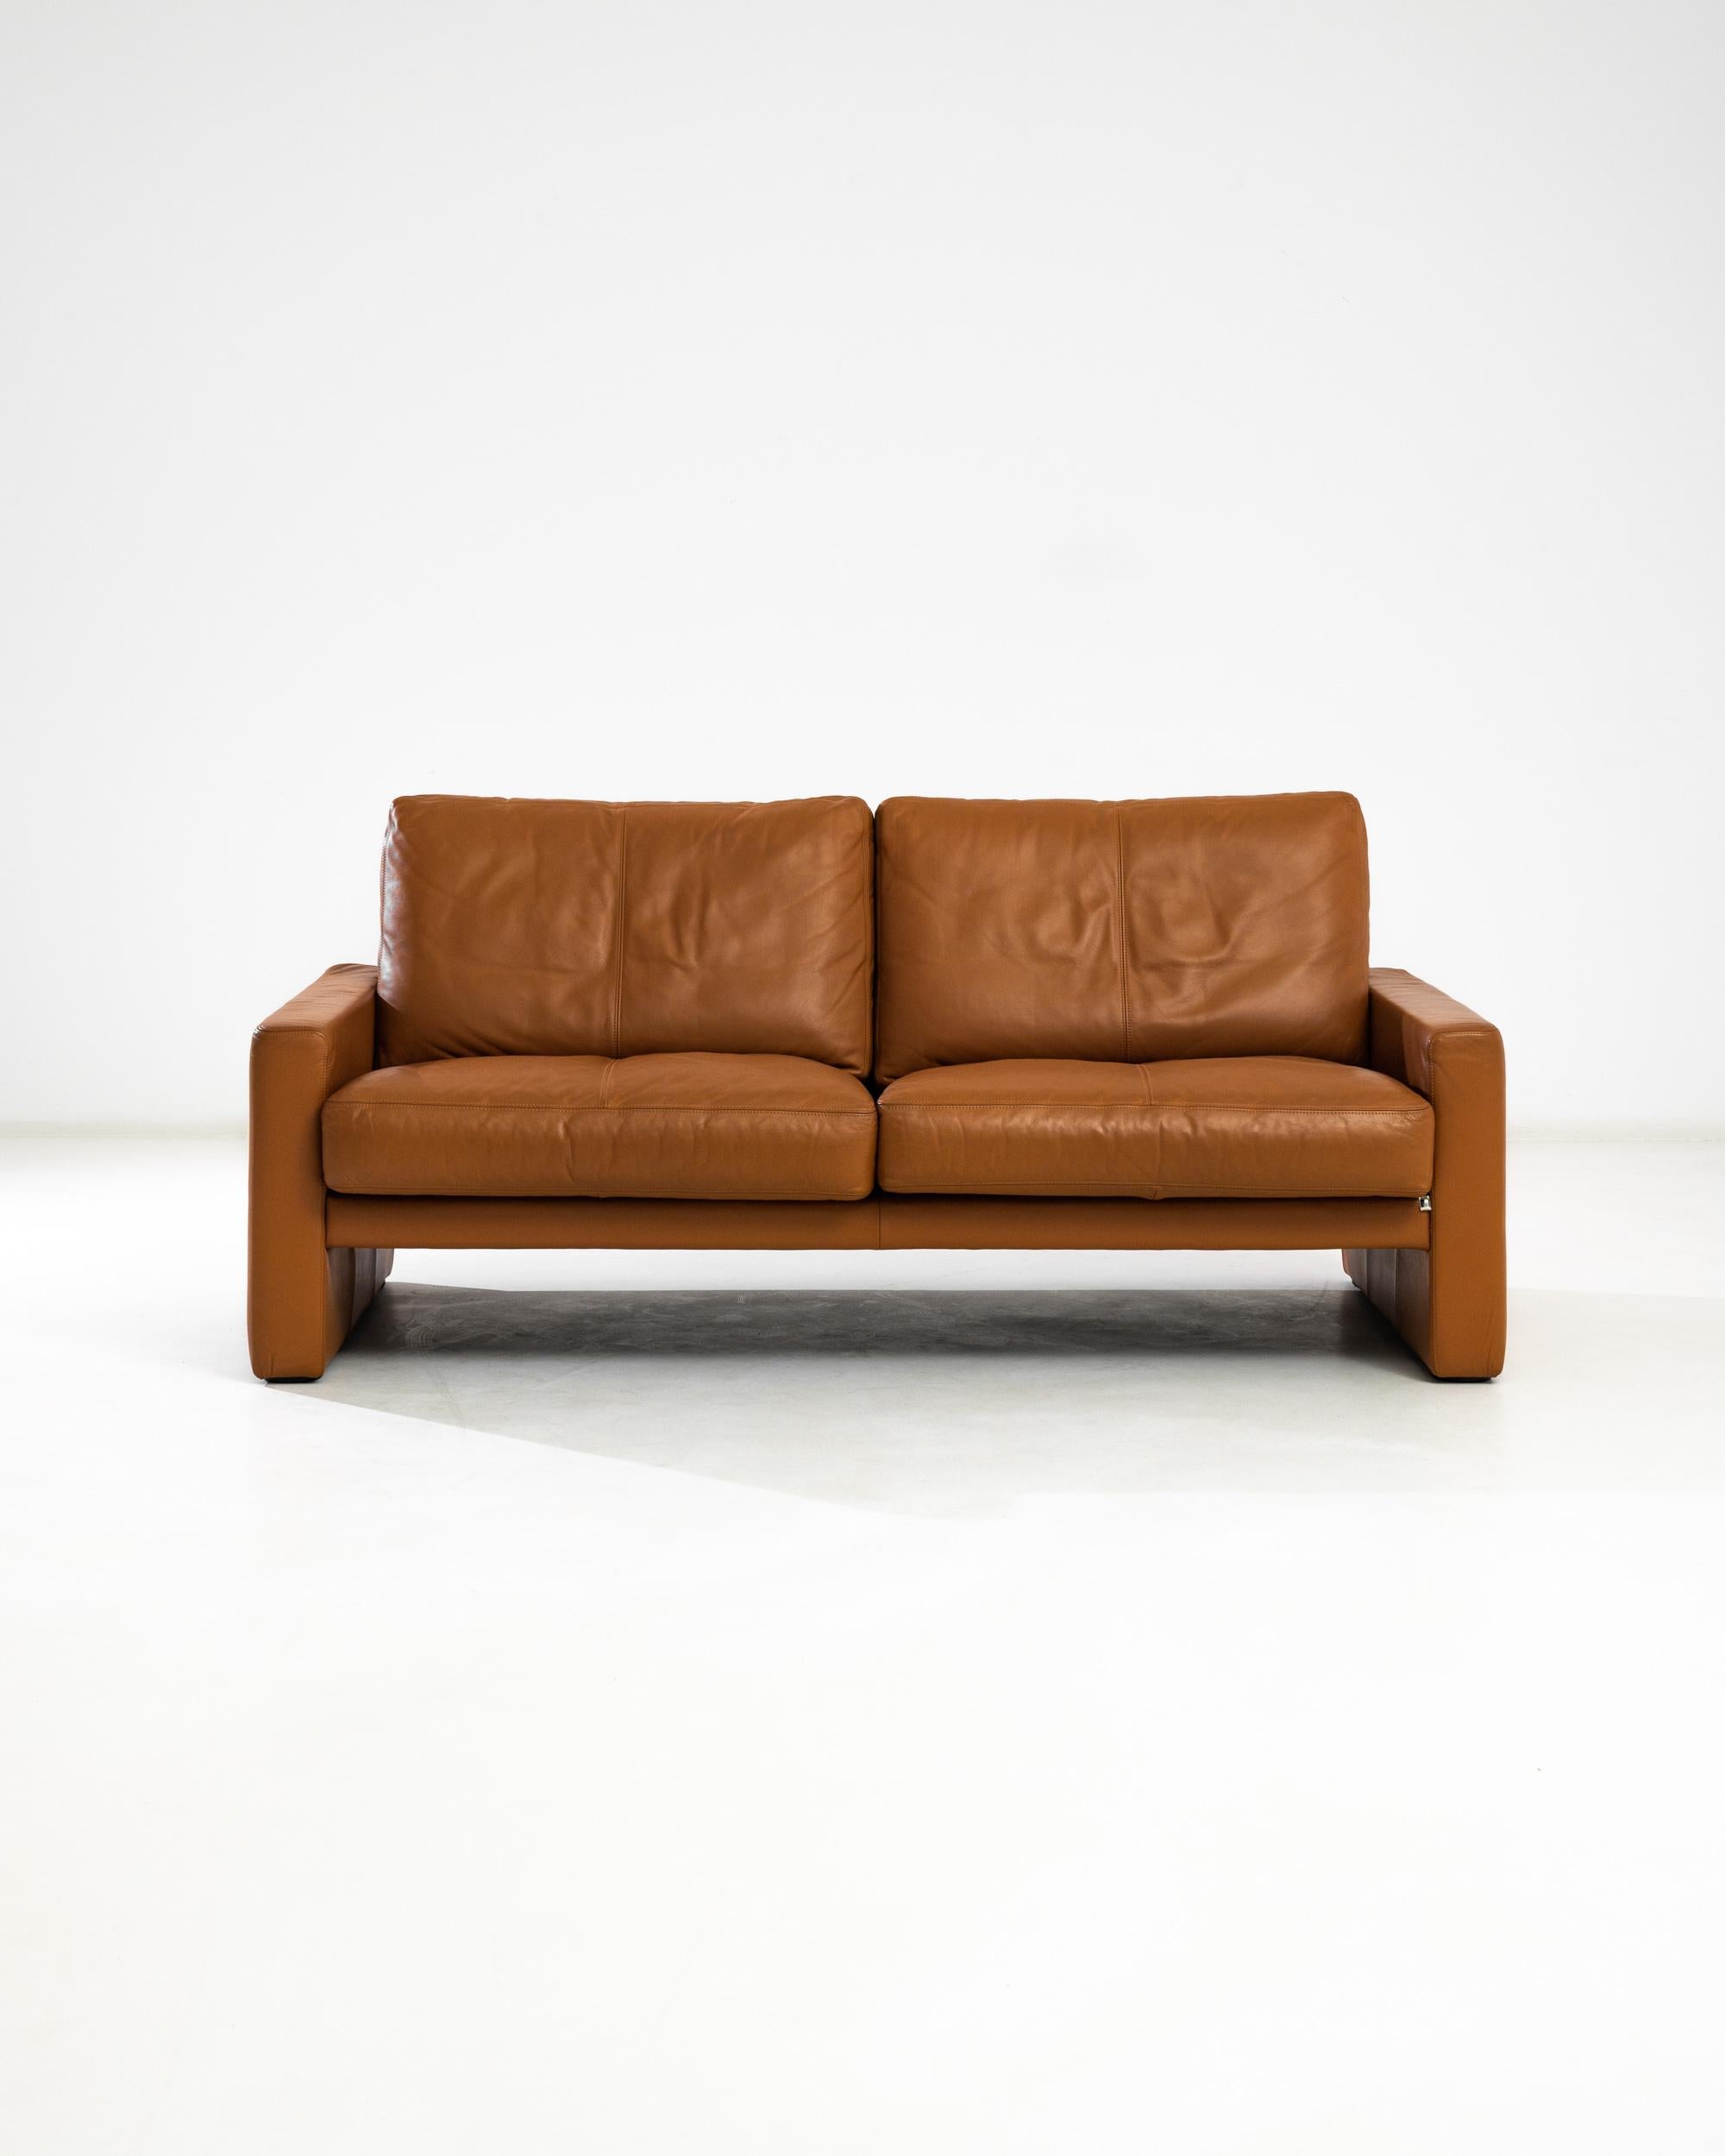 Dieses zweisitzige Sofa wurde im 20. Jahrhundert von der deutschen Möbelfirma WK Wohnen hergestellt. Er ist mit hochwertigem Leder gepolstert und verfügt über bequeme, pralle Sitzkissen und glatte Rückenlehnen, die von quadratischen Armlehnen auf